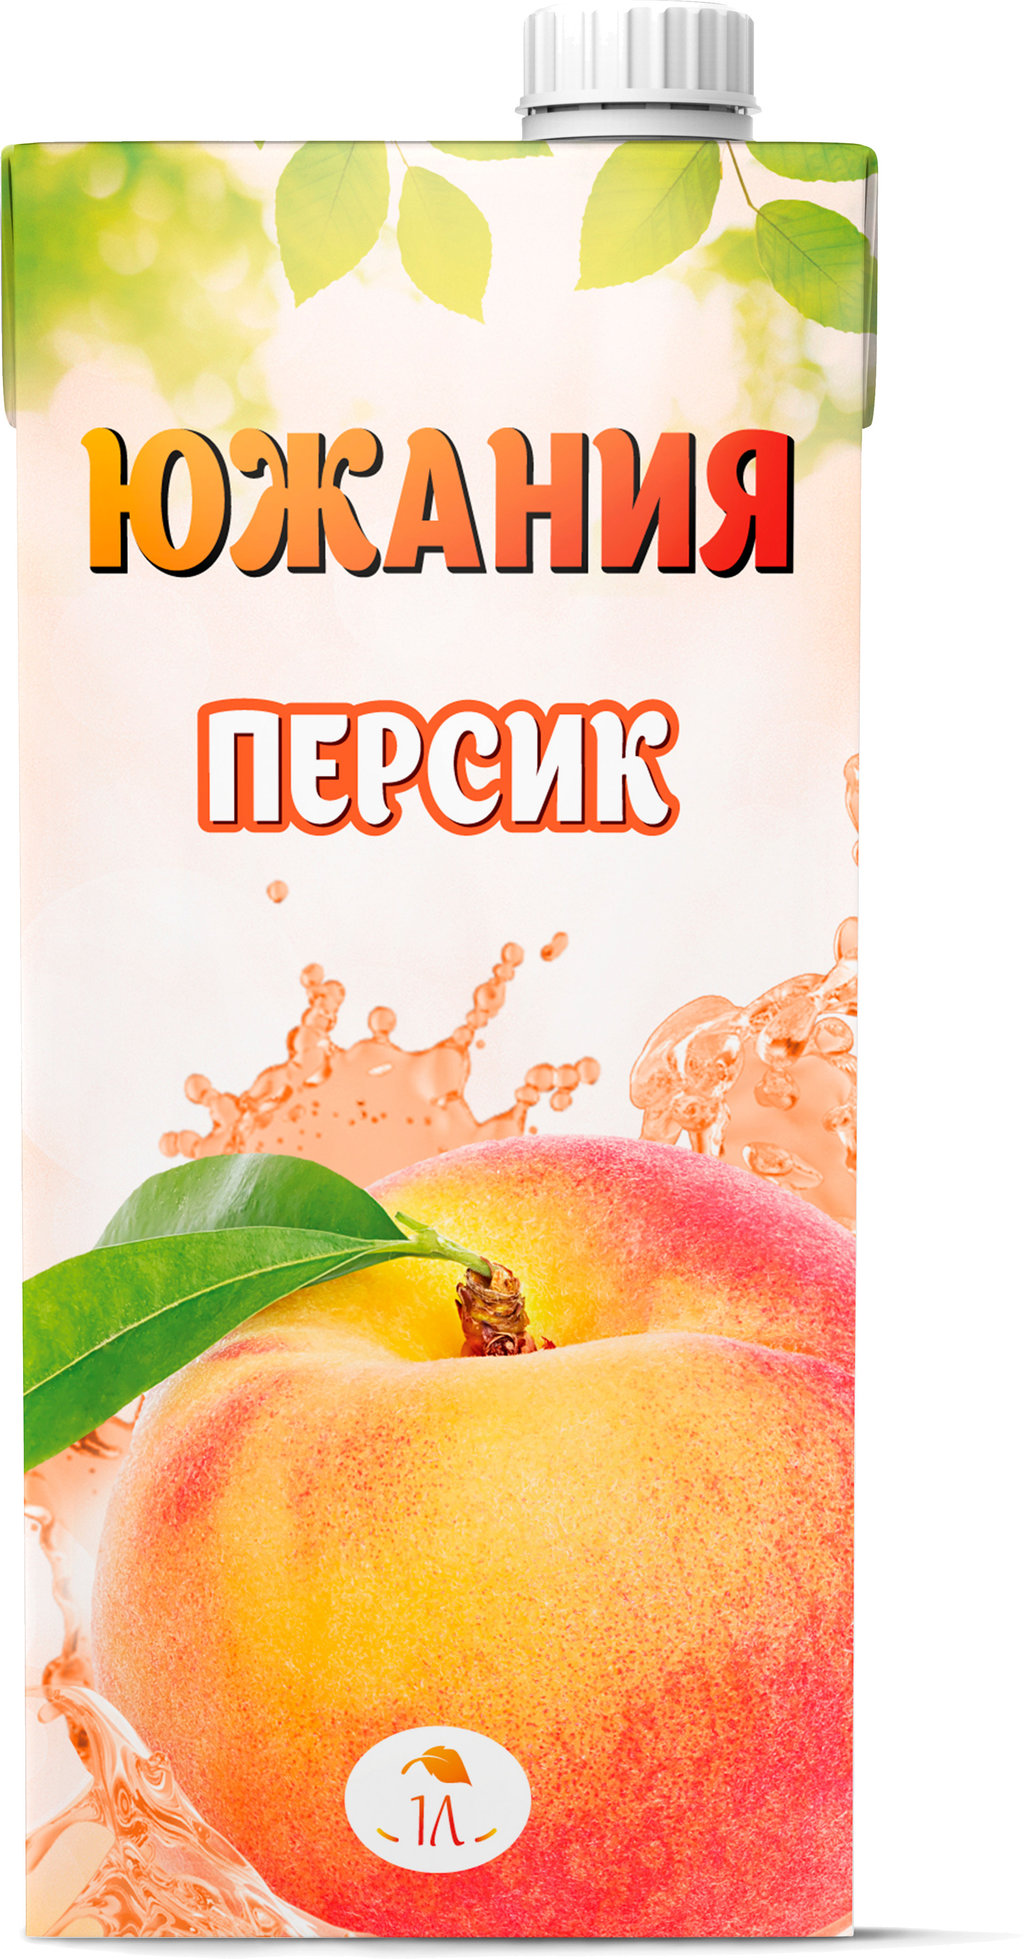 Персиковый сокосодержащий напиток с мякотью